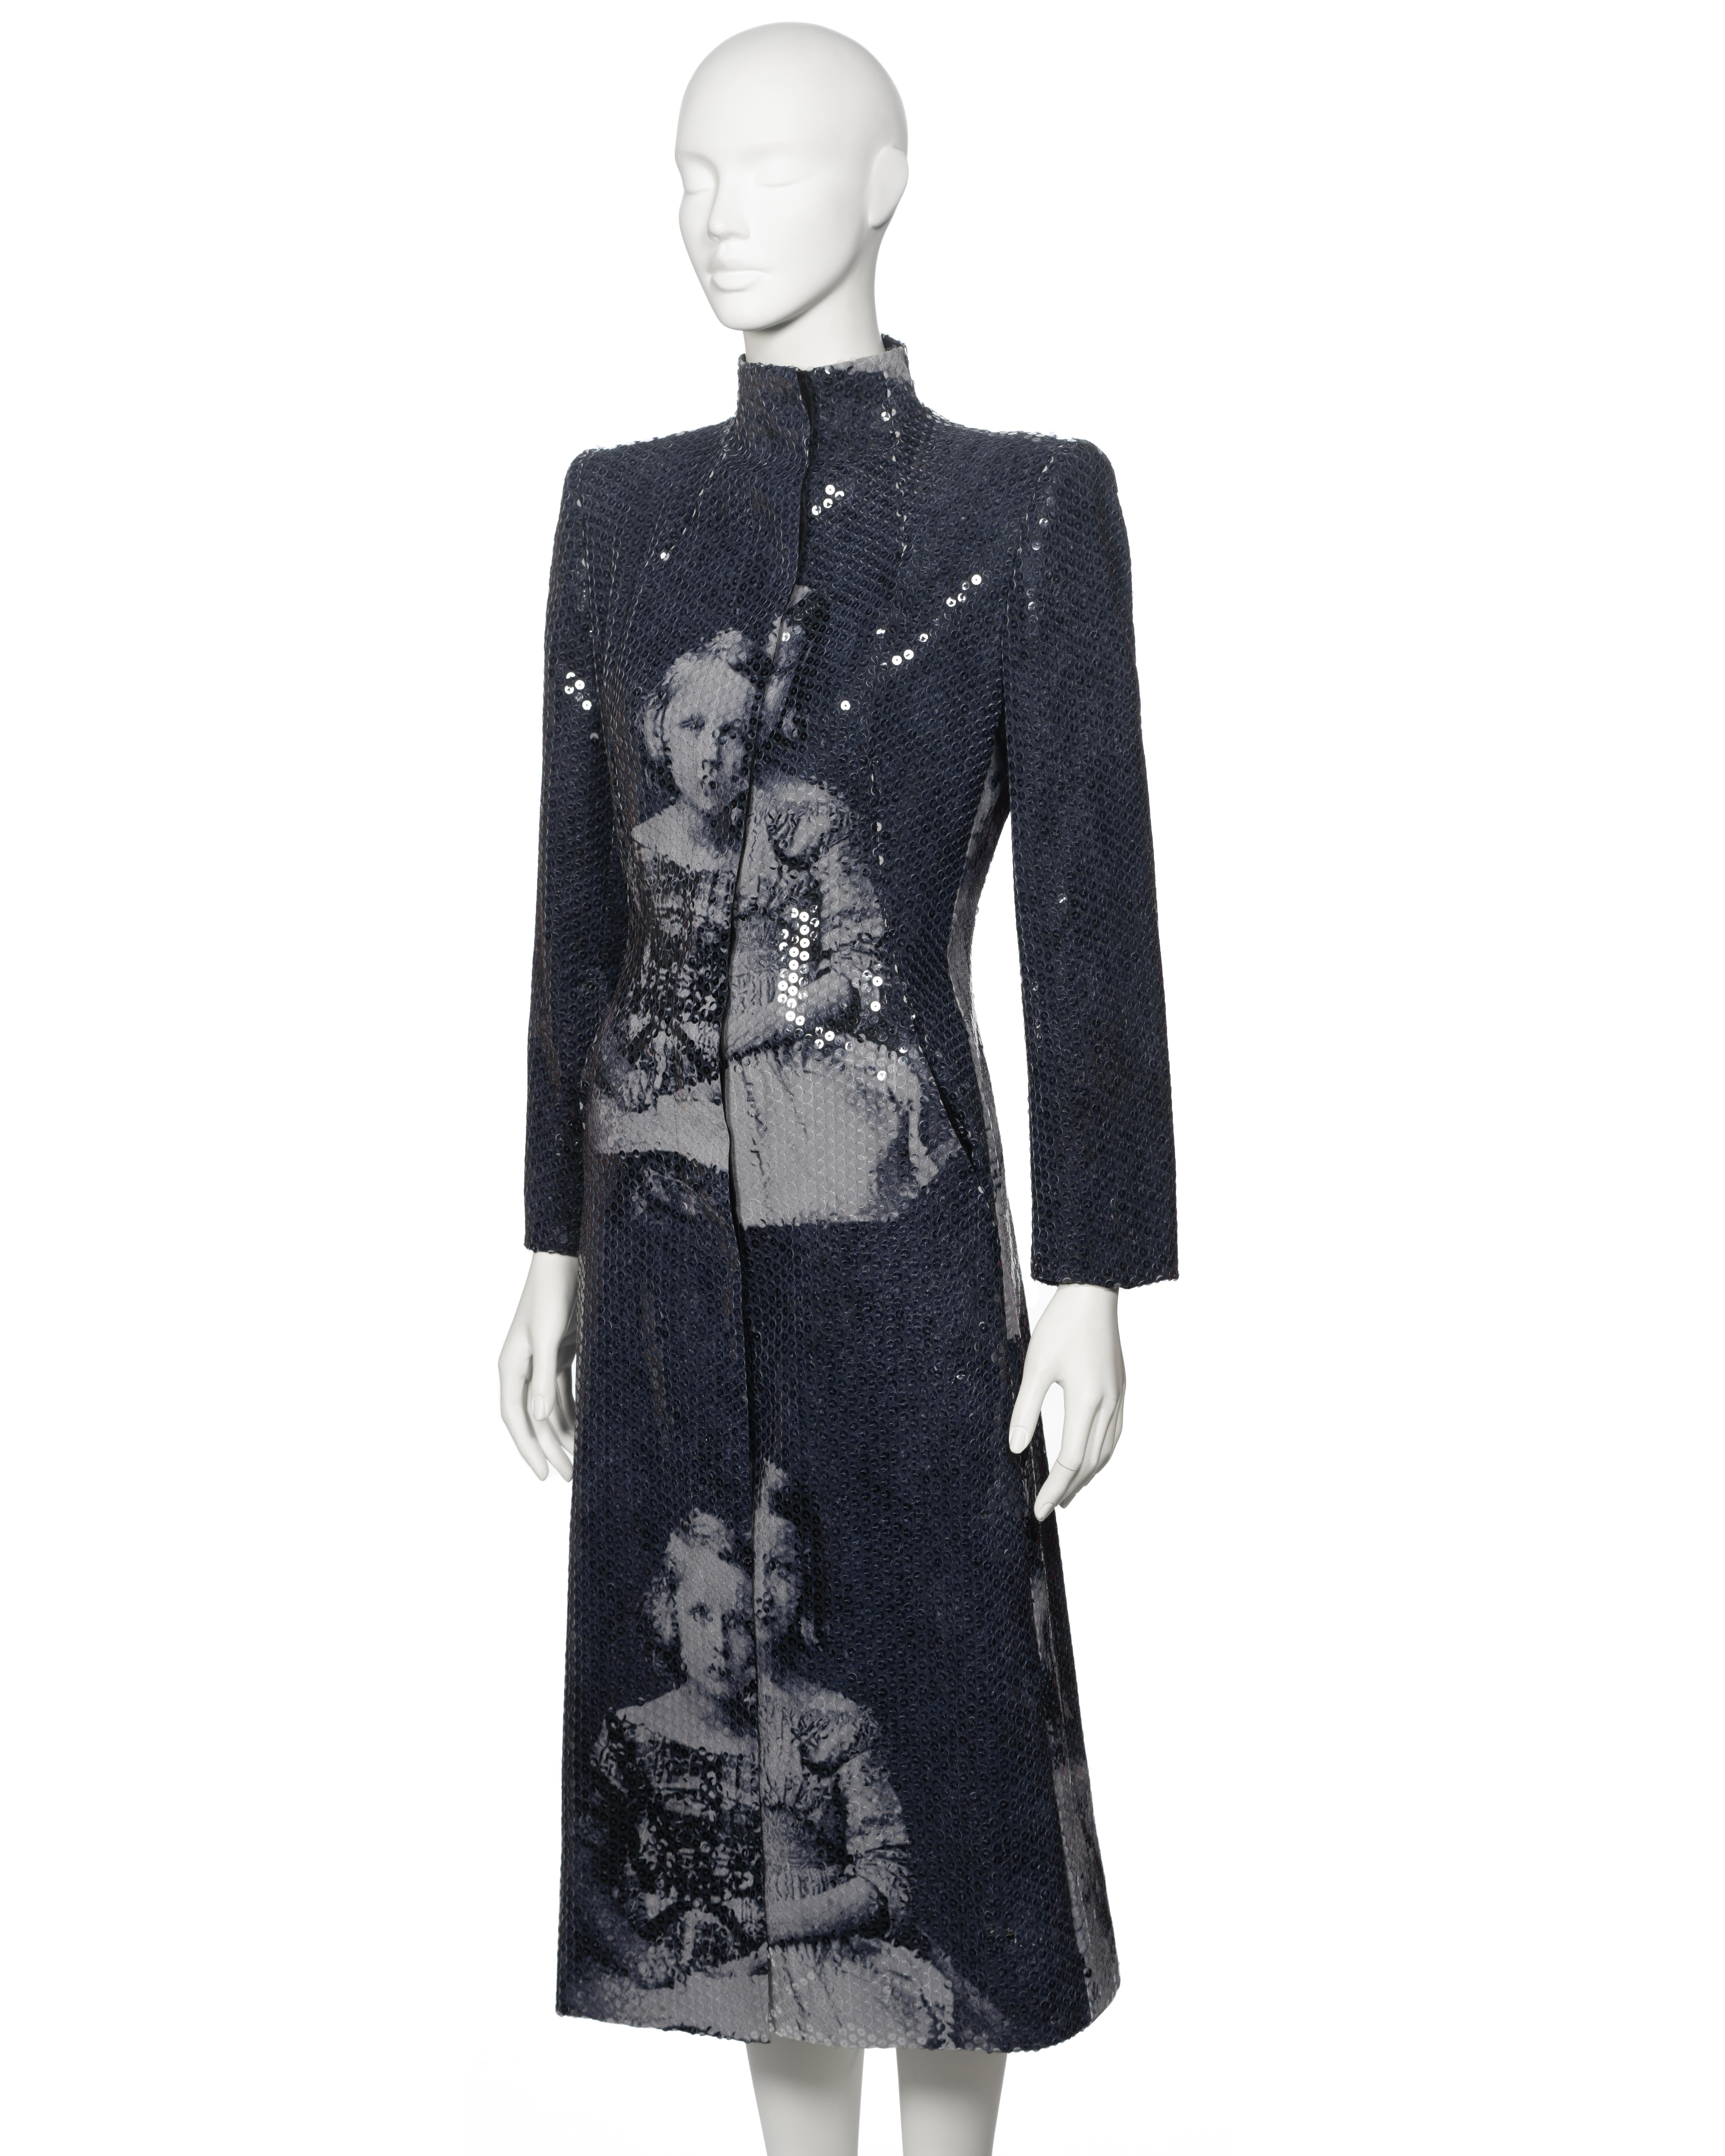 Alexander McQueen Sequin 'Joan' Evening Coat, fw 1998 For Sale 2